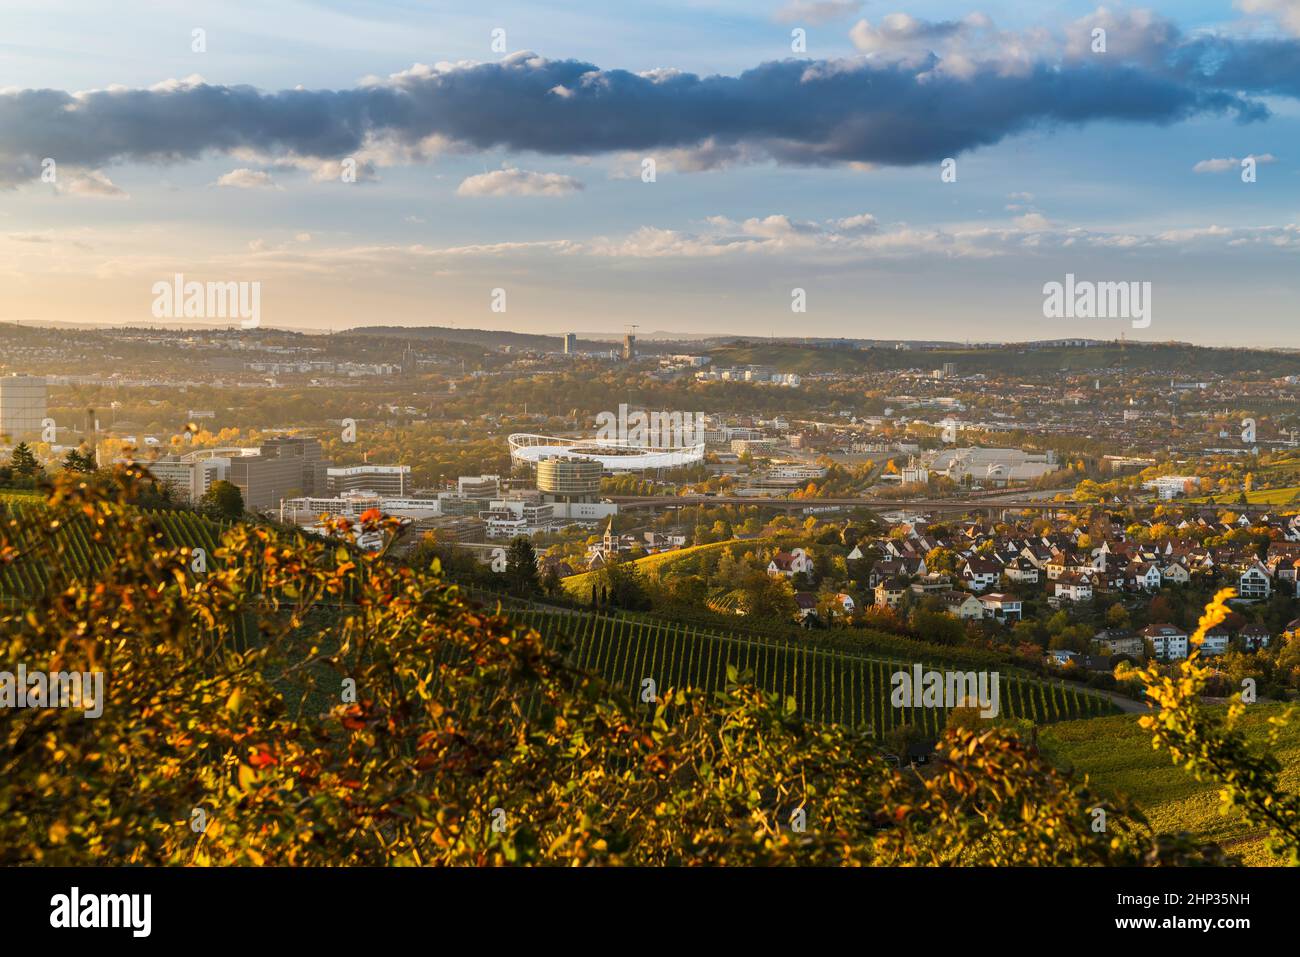 Alemania, ciudad de Stuttgart vista panorámica sobre el horizonte, autopista, paisaje, industria, casas, calles, estadio en la cuenca al atardecer Foto de stock